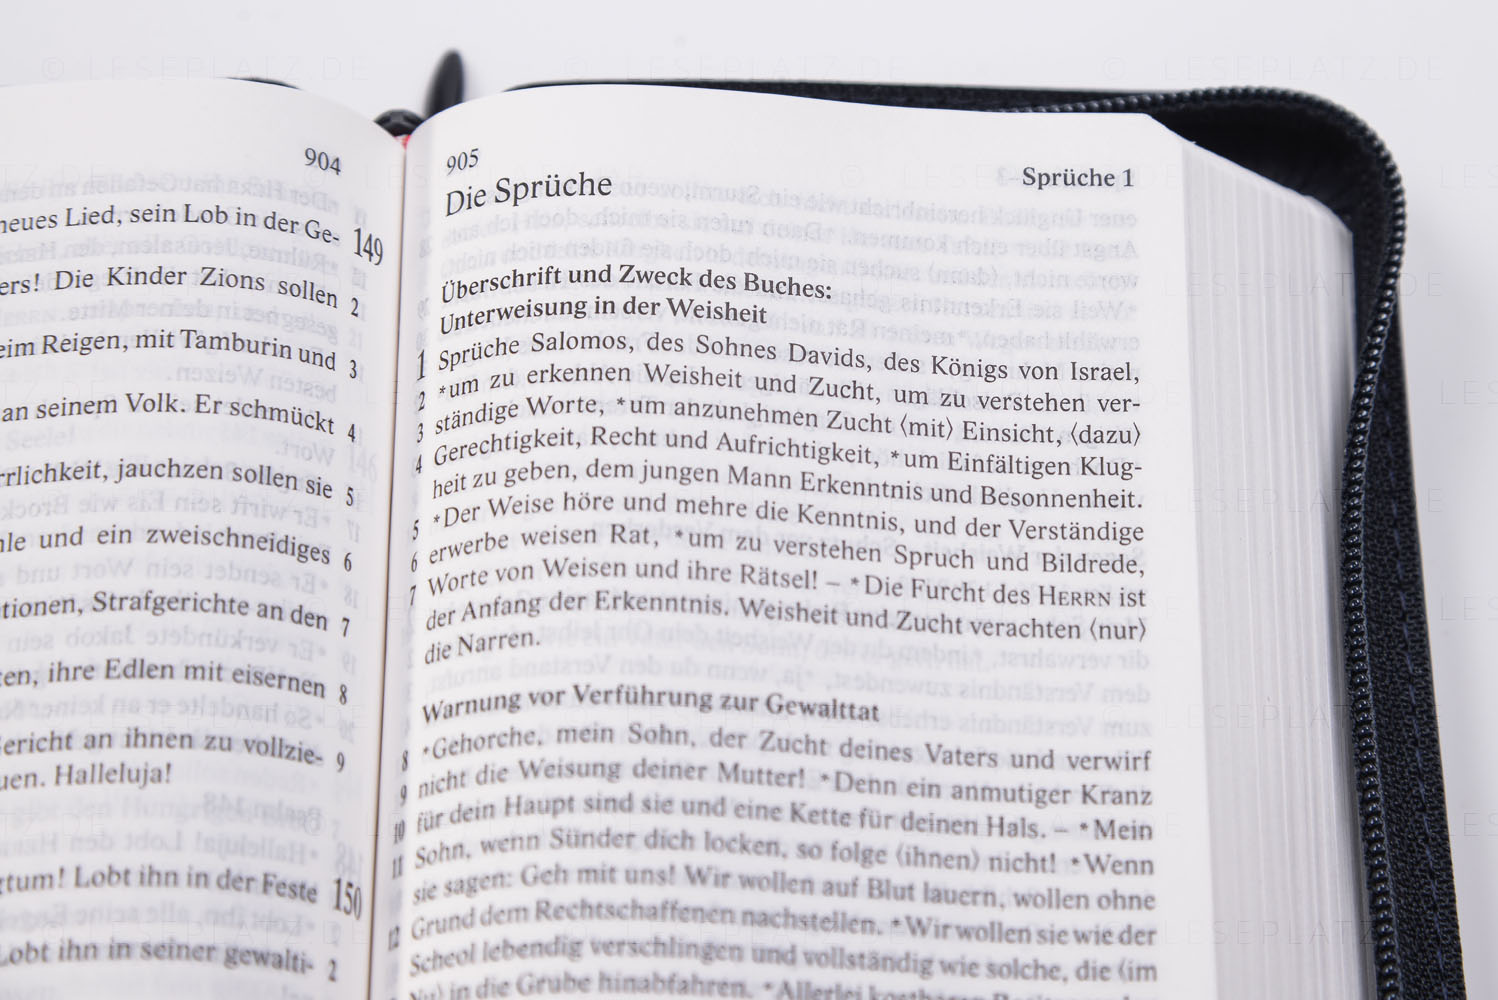 Elberfelder Bibel 2006 Pocket Edition - Kunstleder dunkelblau, mit Reißverschluss